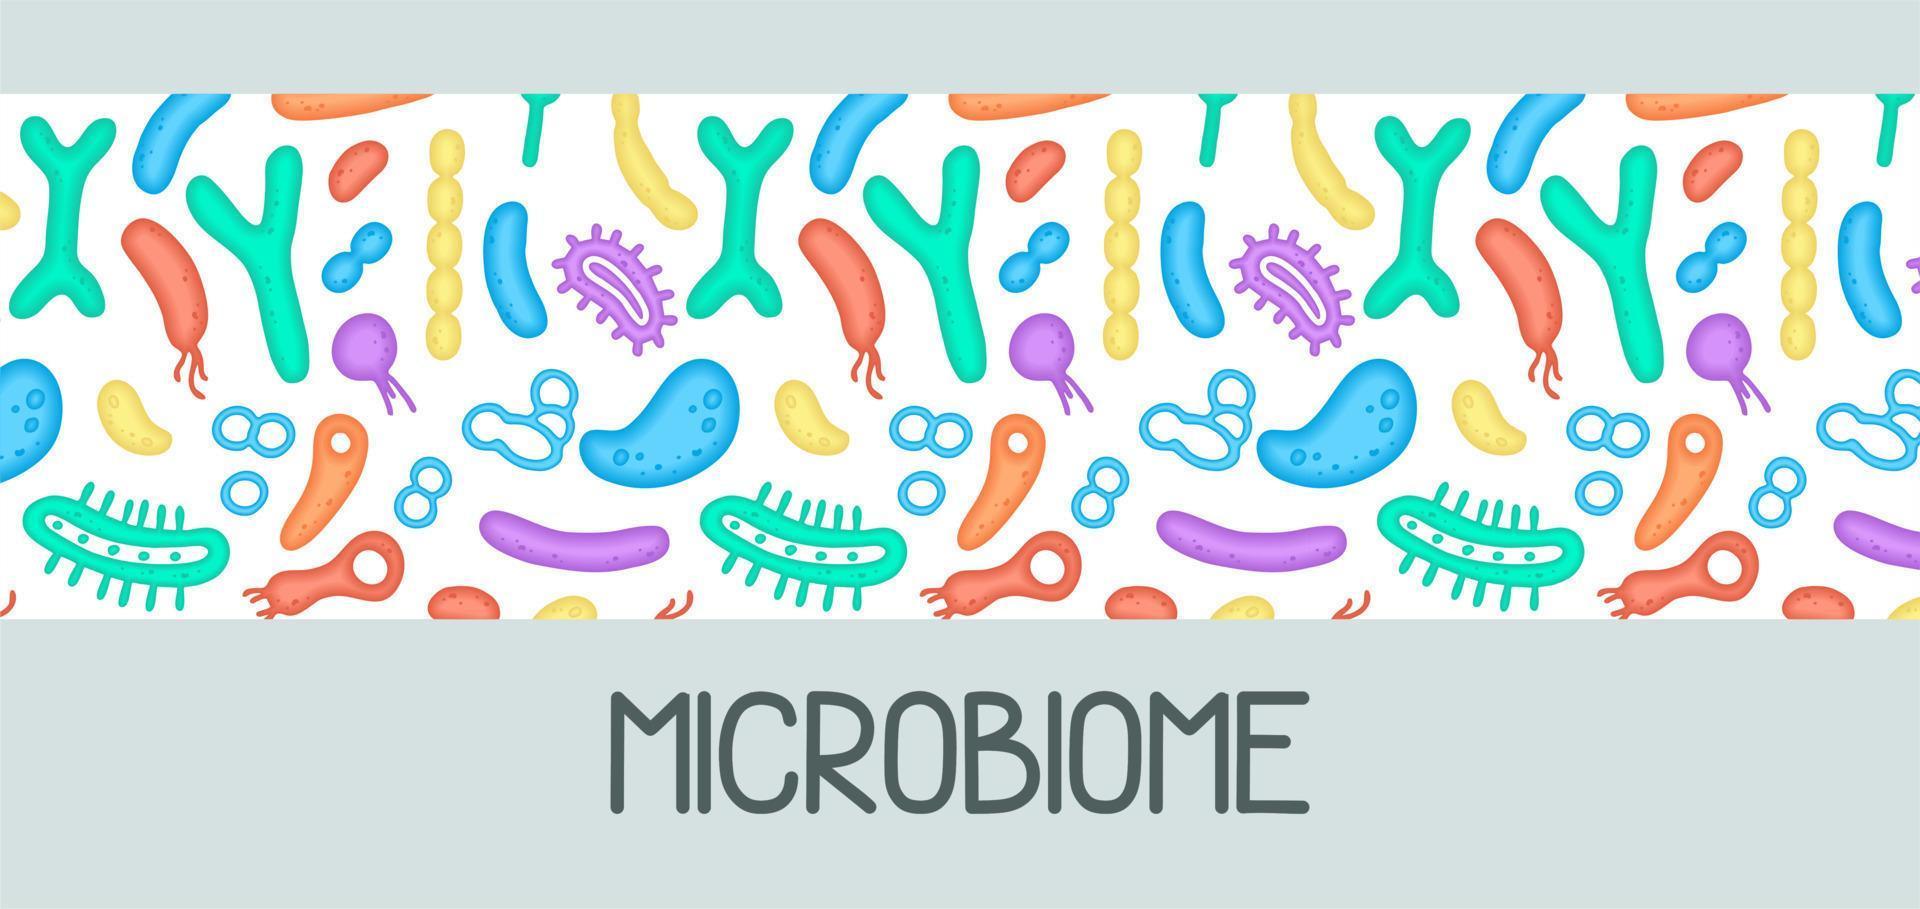 microbioom illustratie van bacteriën. vector afbeelding. gastro-enteroloog. bifidobacteriën, lactobacillen. melk- zuur bacteriën. illustratie in een vlak stijl.